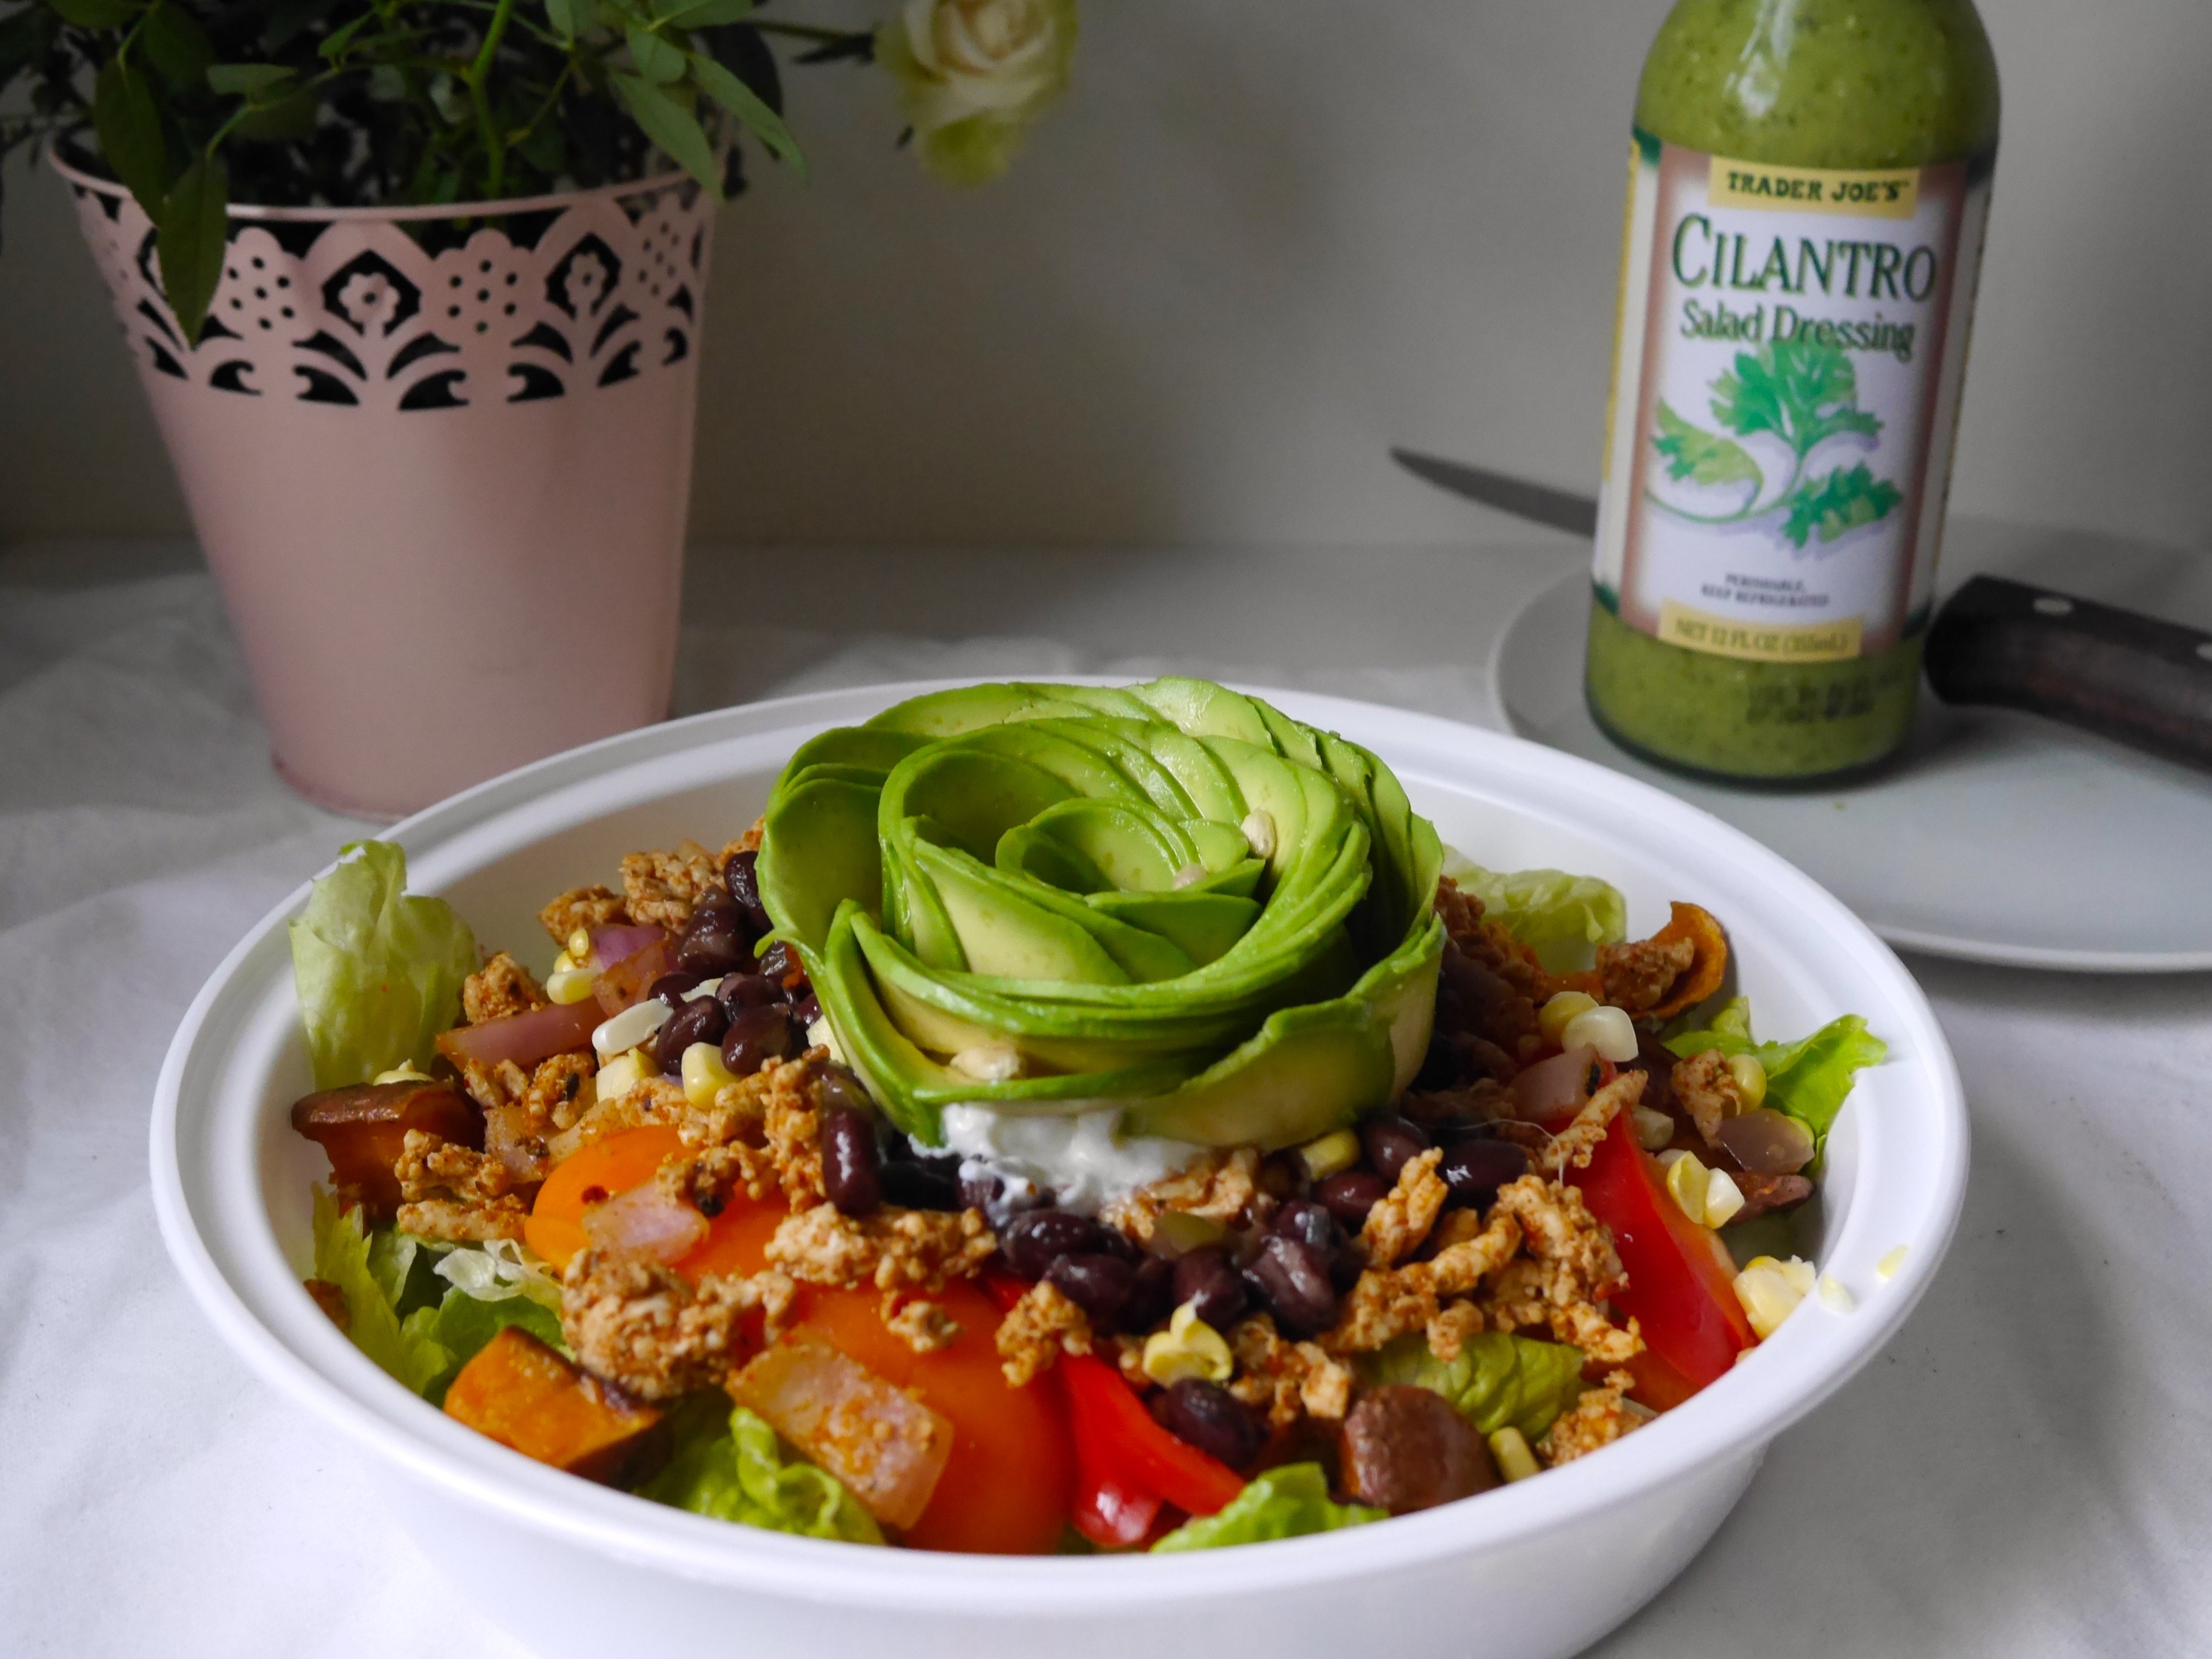 healthy taco salad